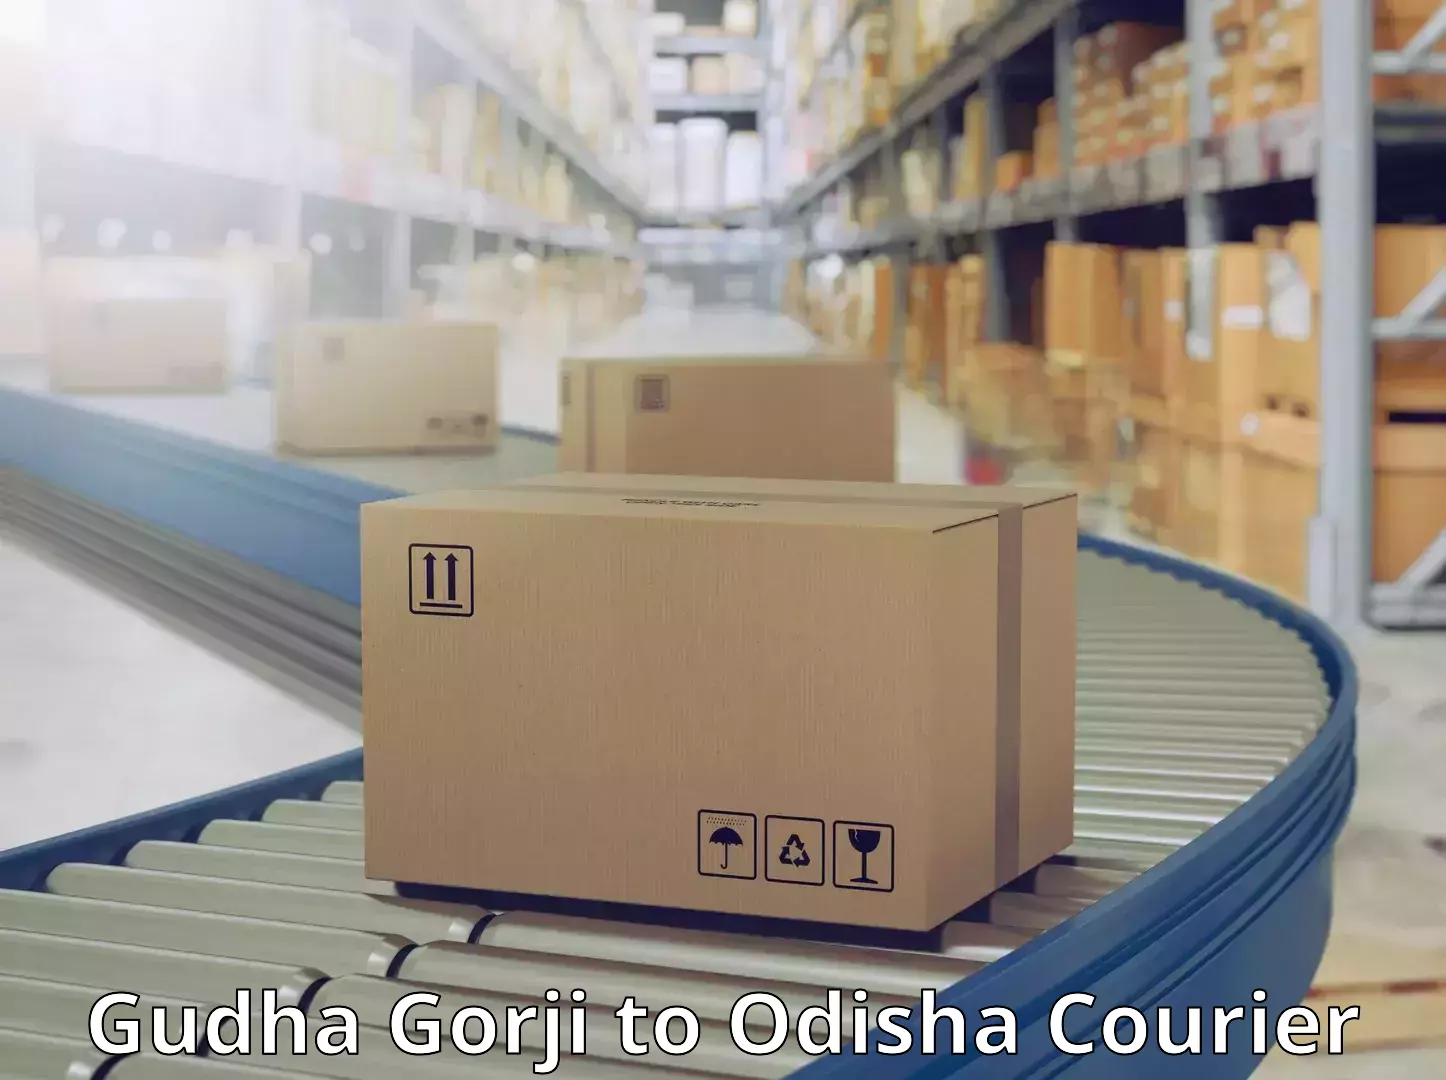 Automated parcel services Gudha Gorji to Ukhunda